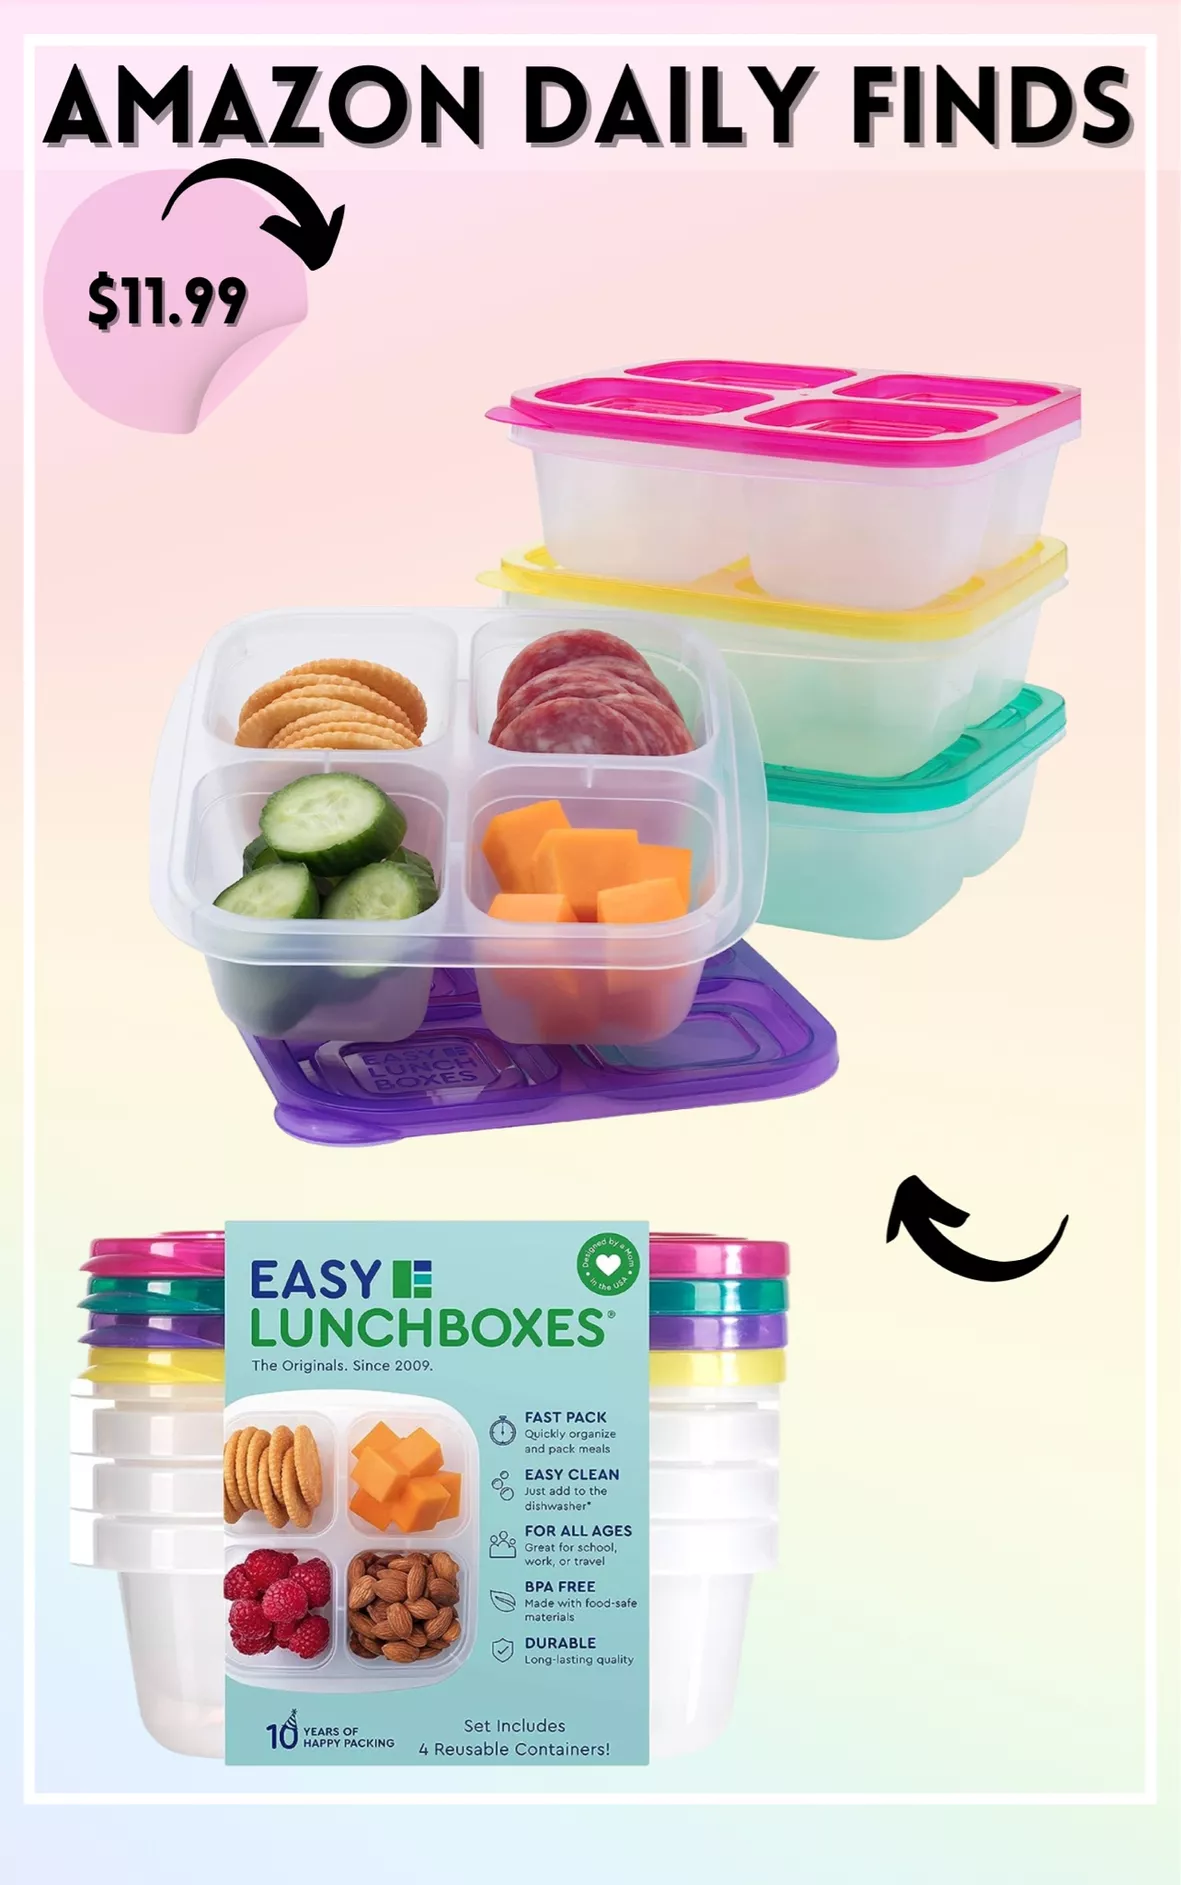  EasyLunchboxes - Bento Snack Boxes - Reusable 4